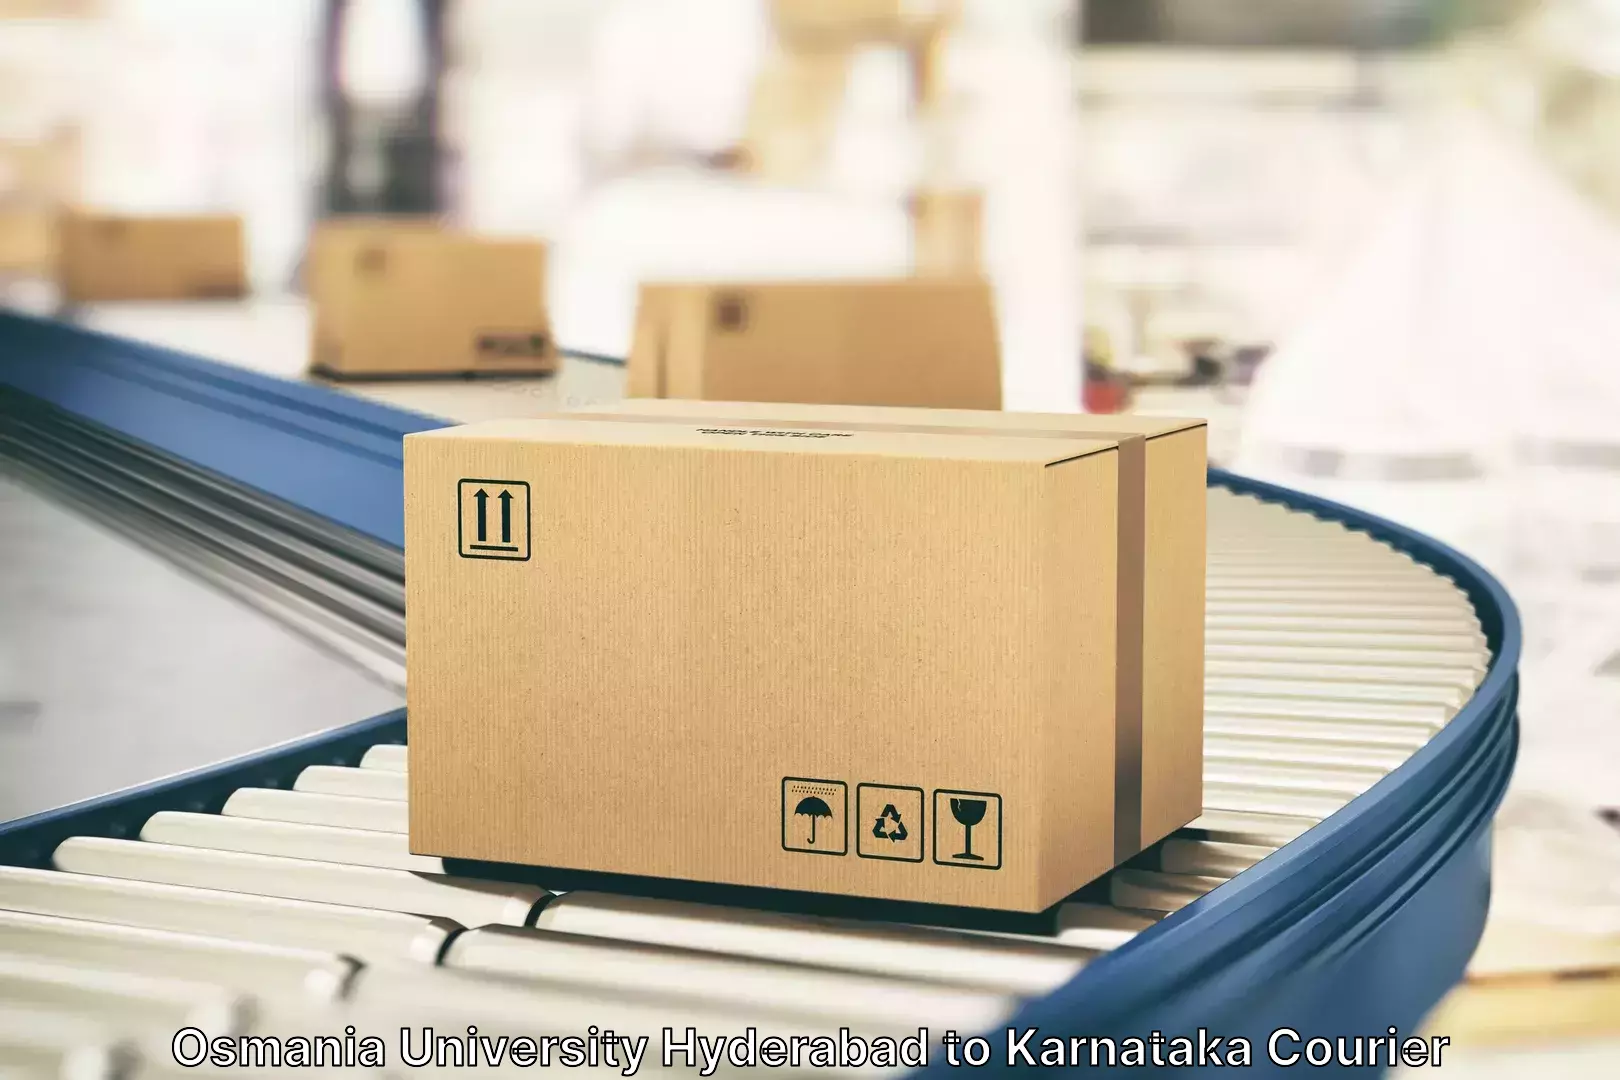 Luggage forwarding service Osmania University Hyderabad to Karnataka